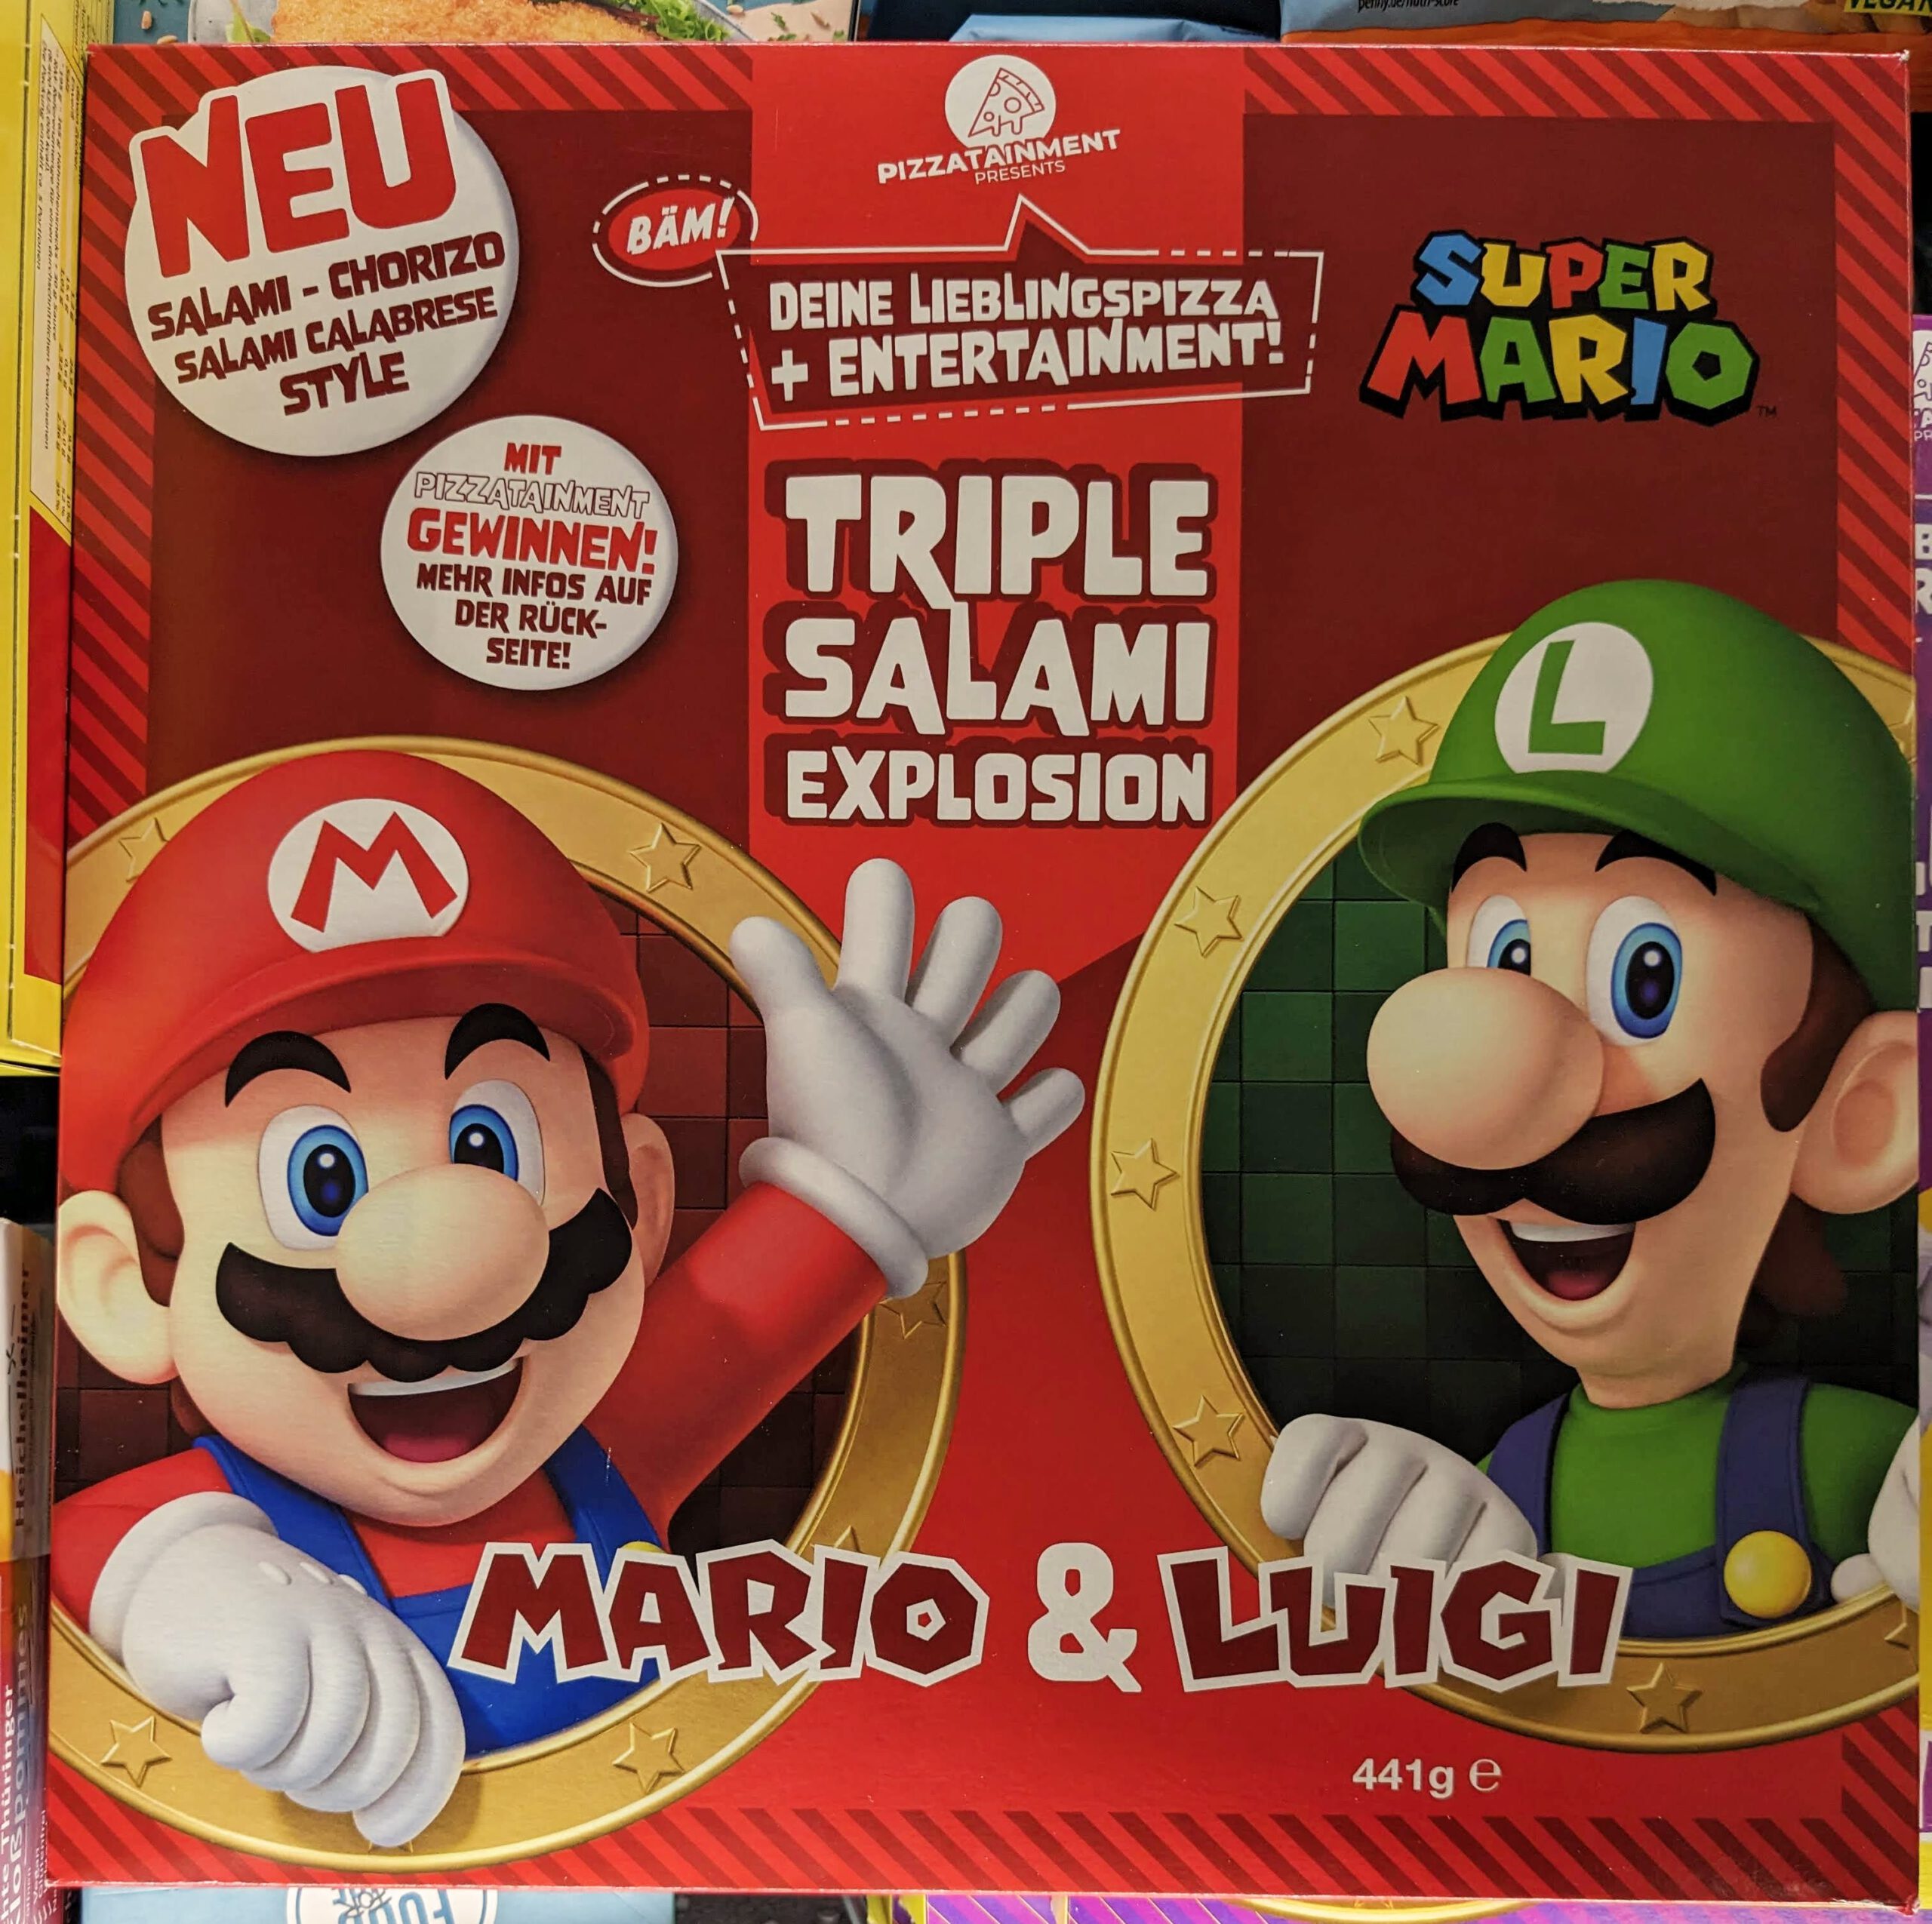 Pizzatainment: Nintendo Switch und Mario Strikers gewinnen